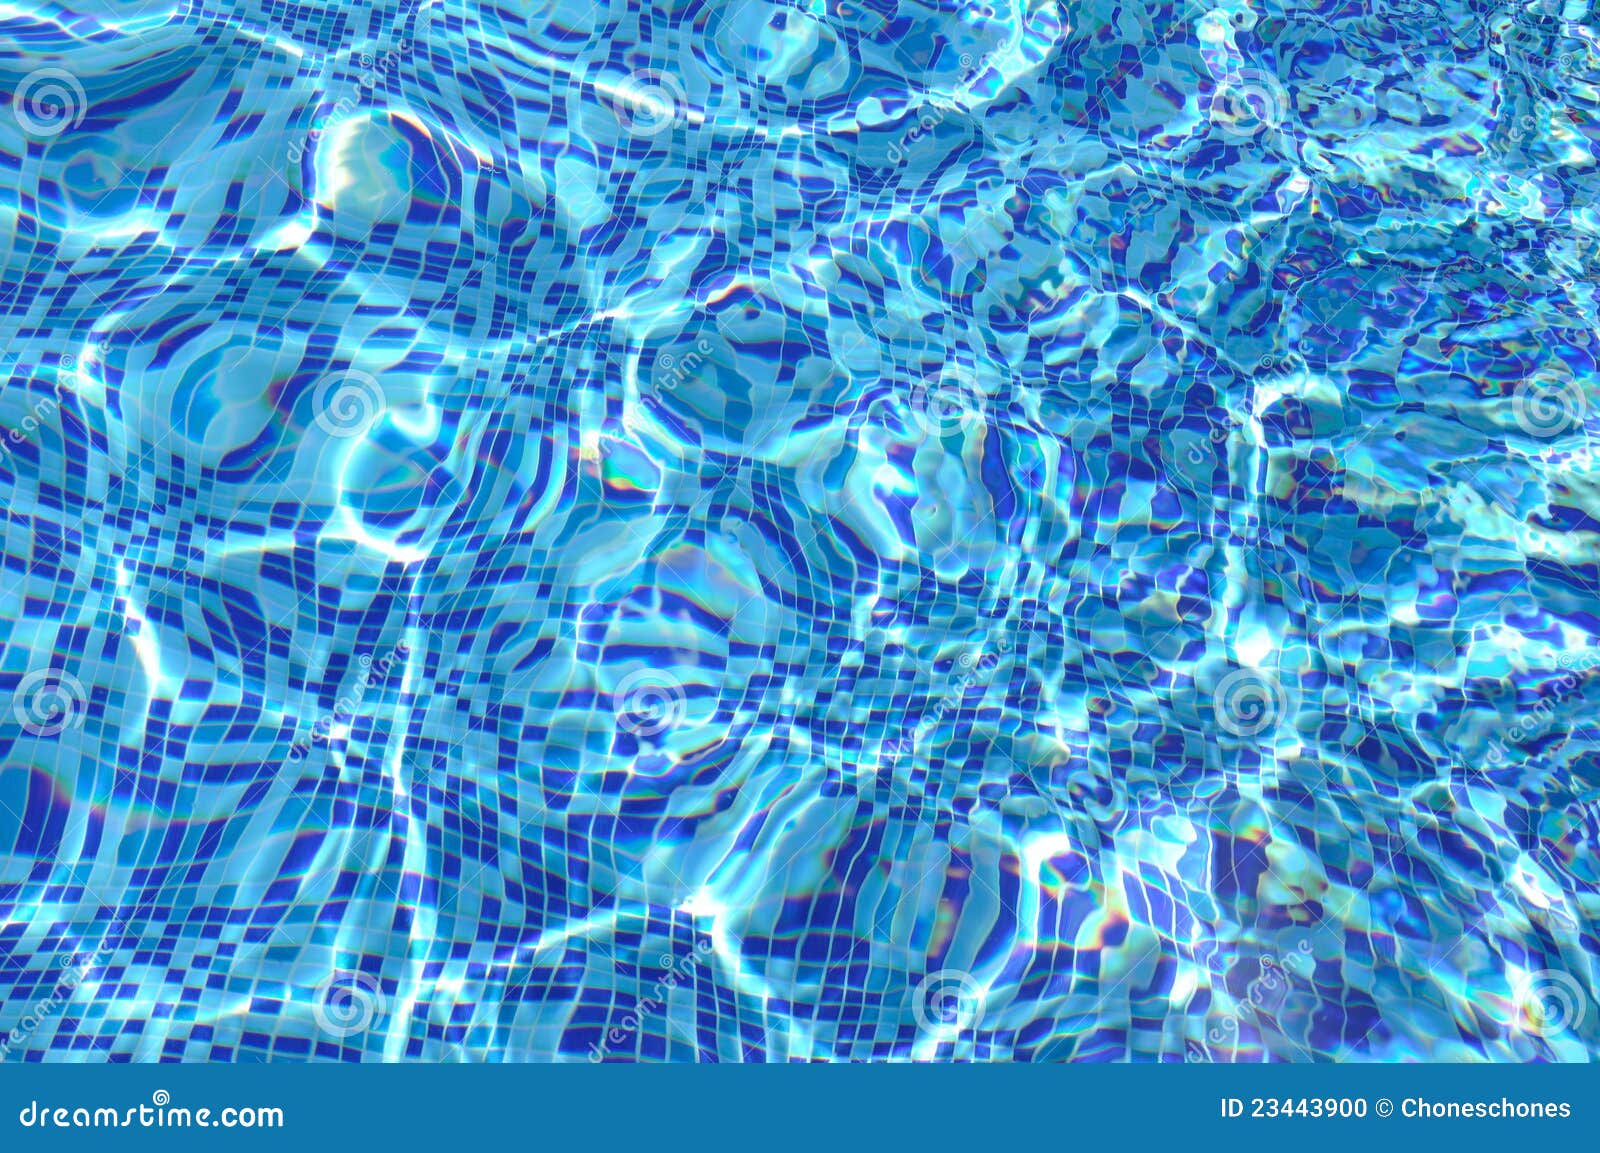 Texture De L'eau De Piscine Photo stock - Image du regroupement, gloire: 23443900